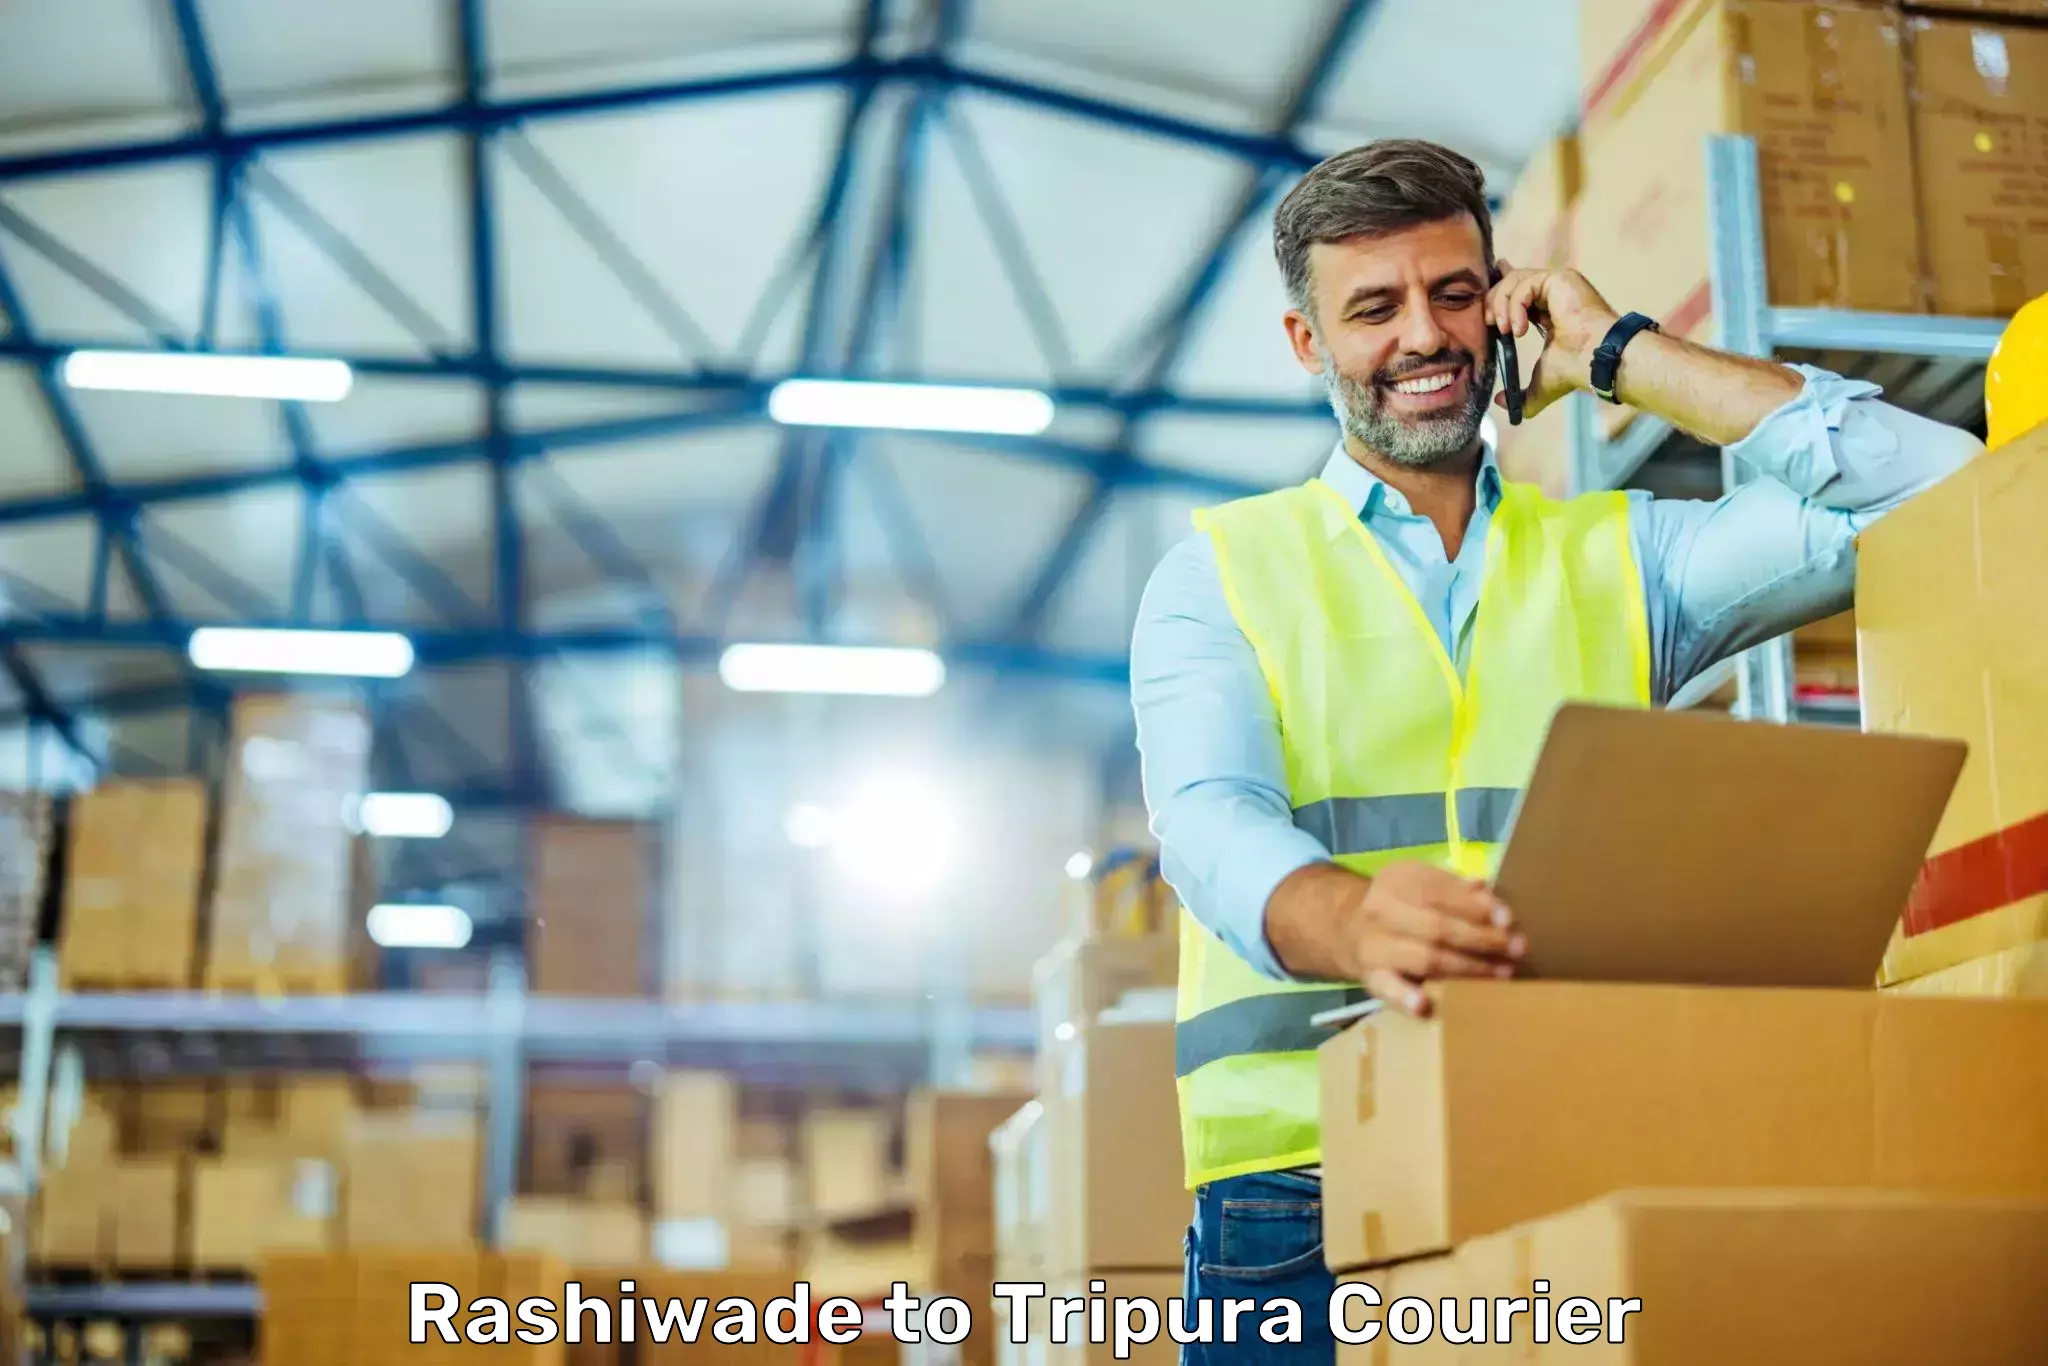 Courier service comparison Rashiwade to North Tripura